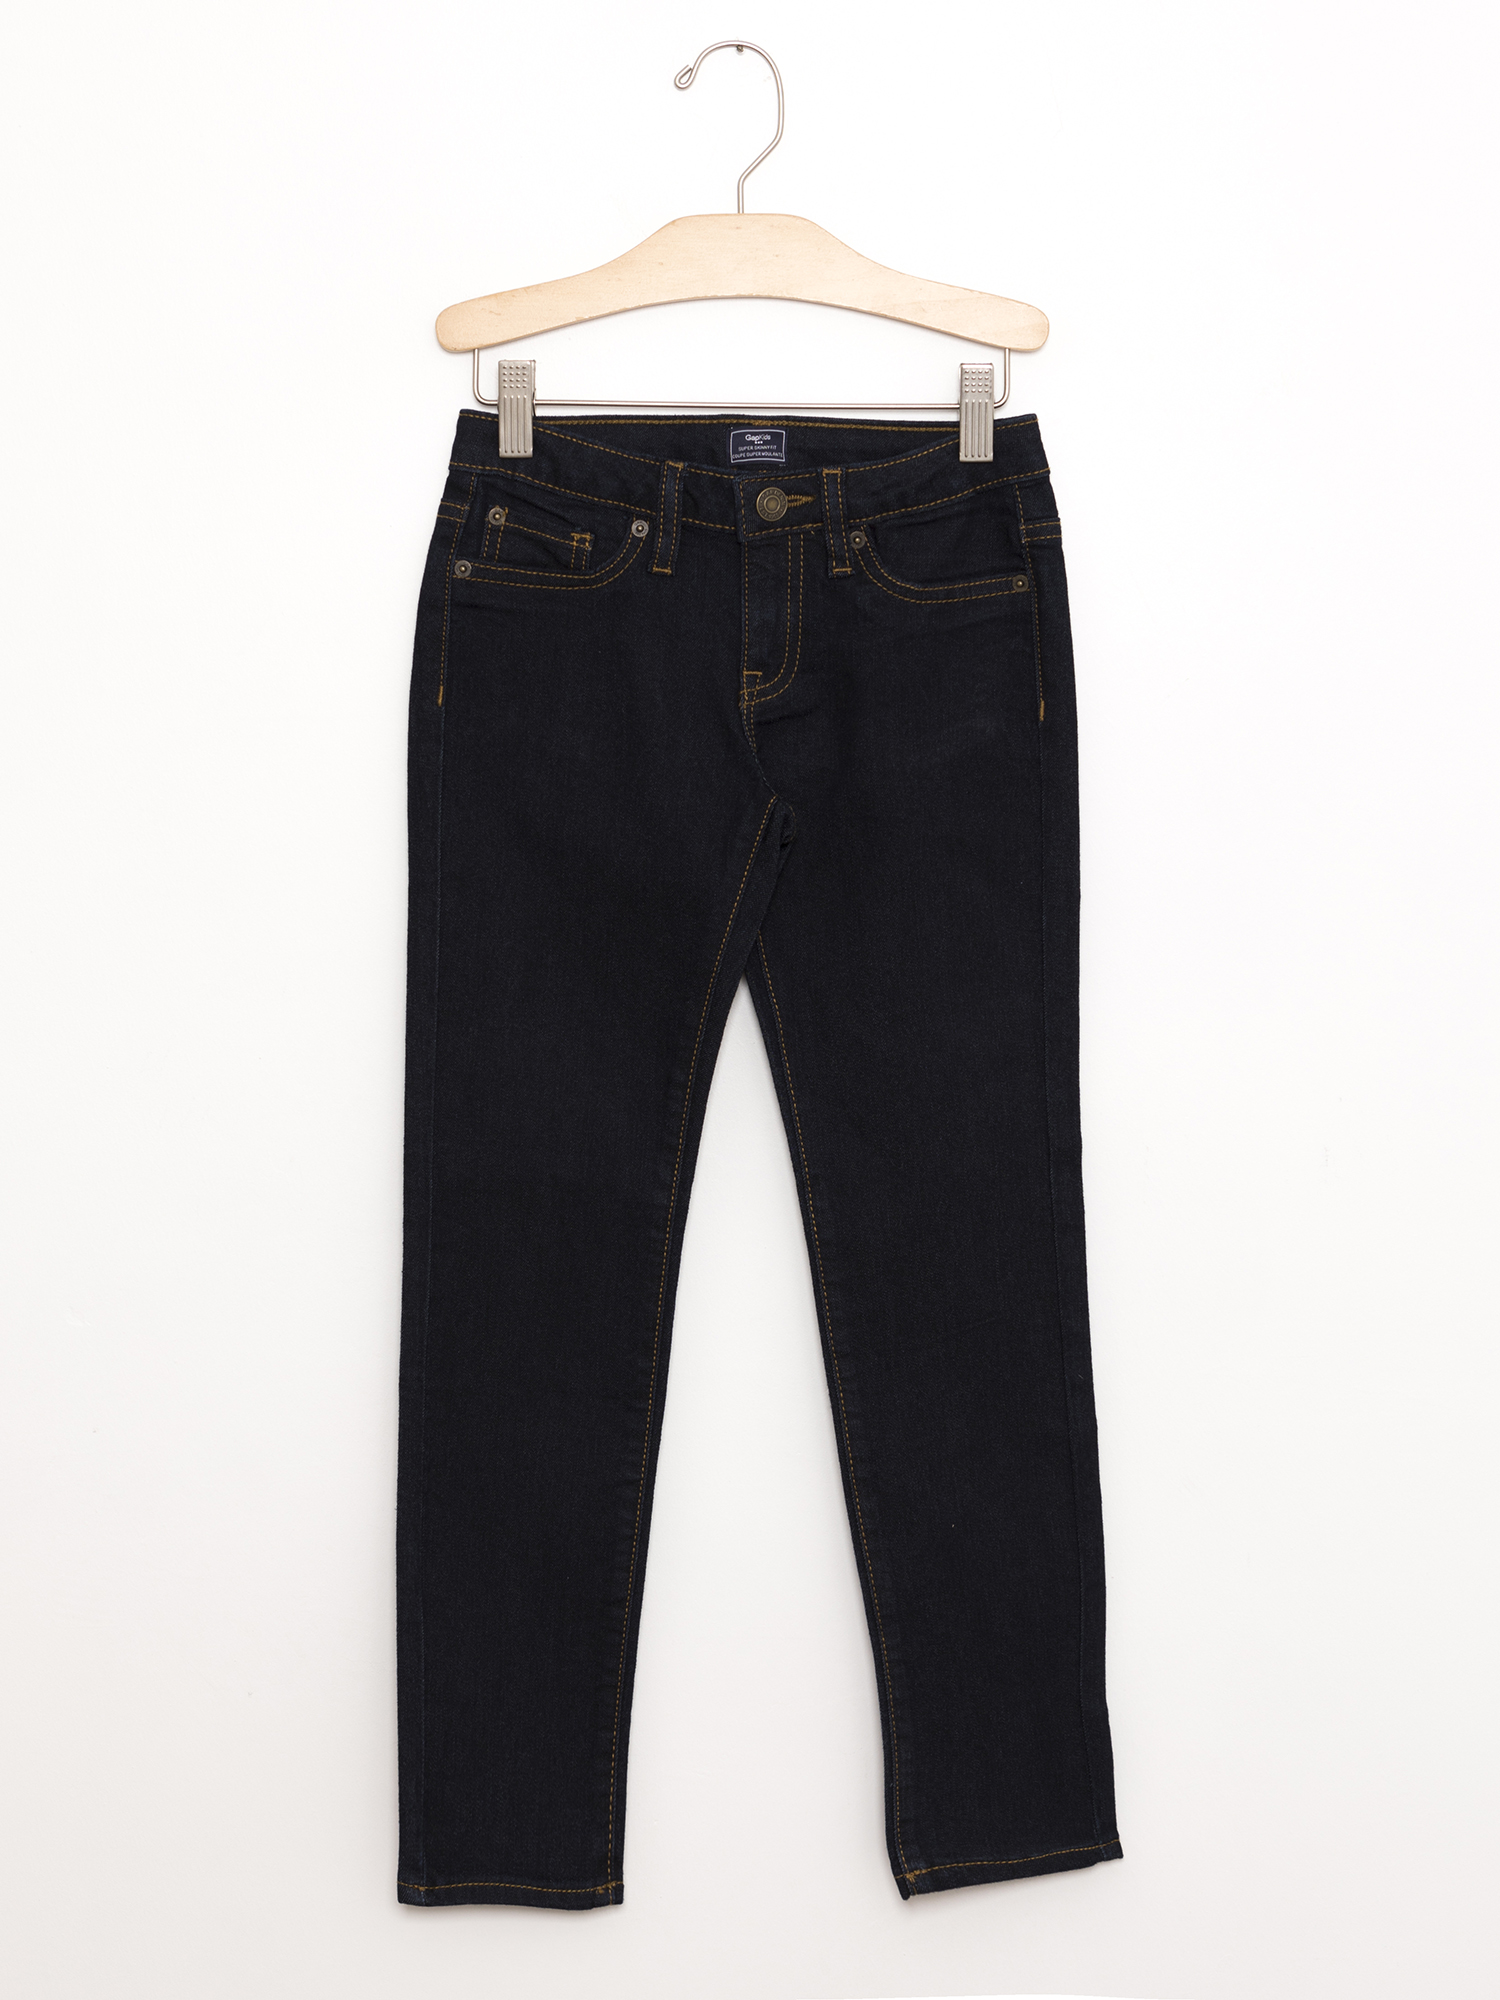 Gap Super skinny jean pantolon. 1